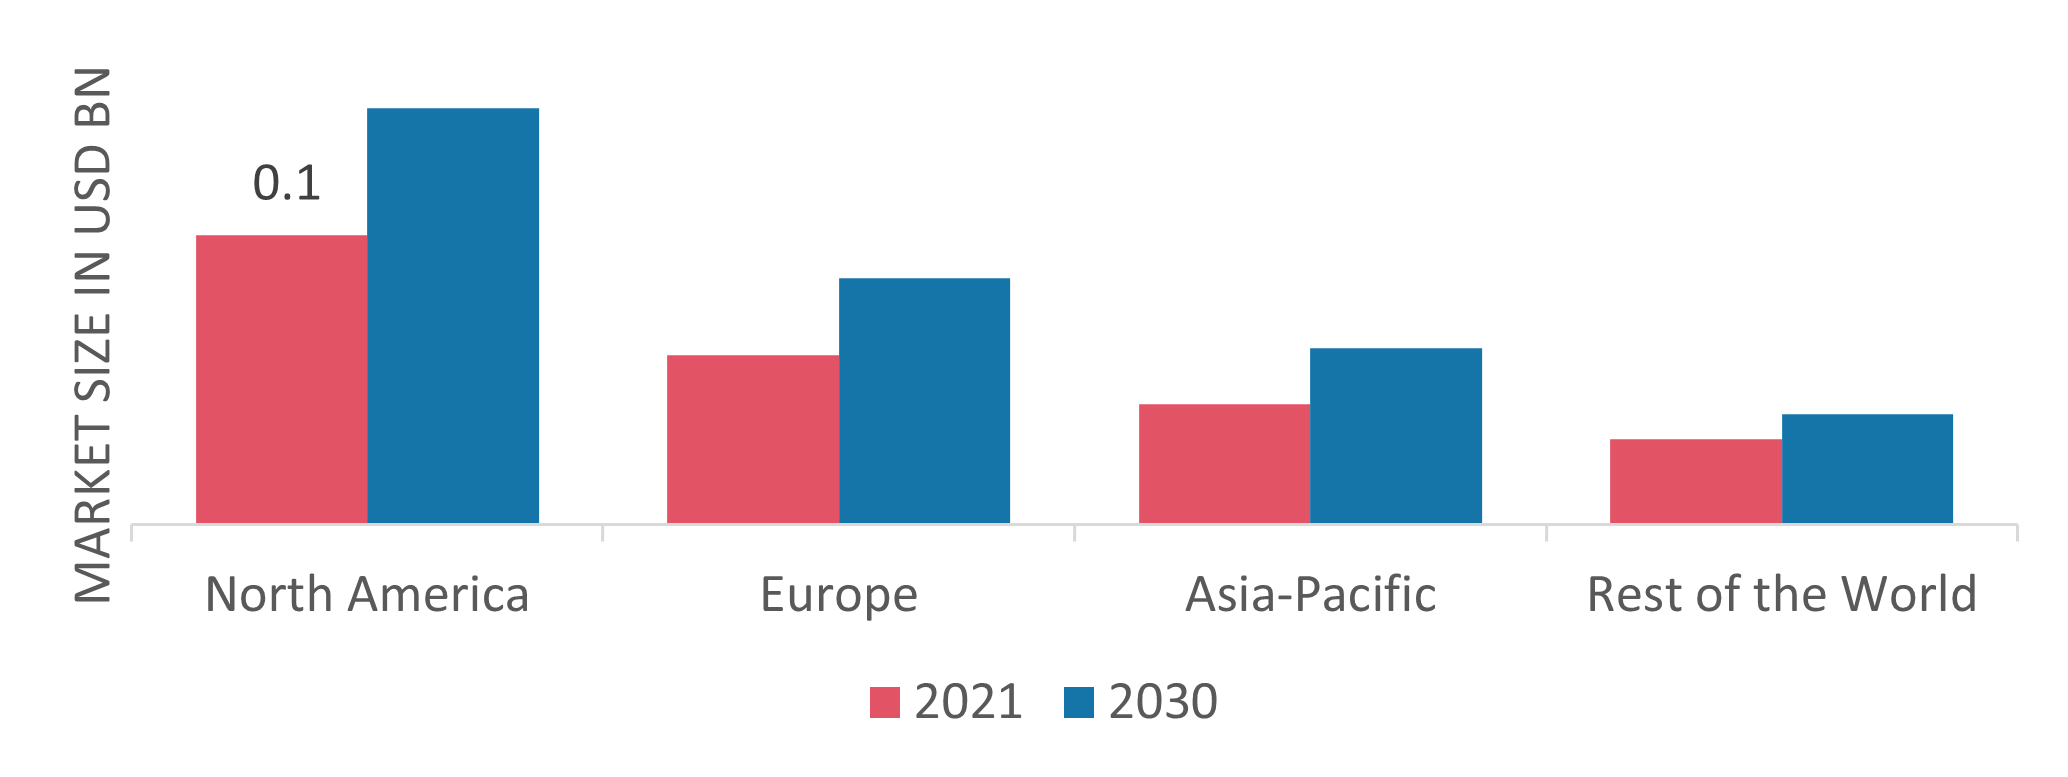 Green Hydrogen Market Share By Region 2021 (%)